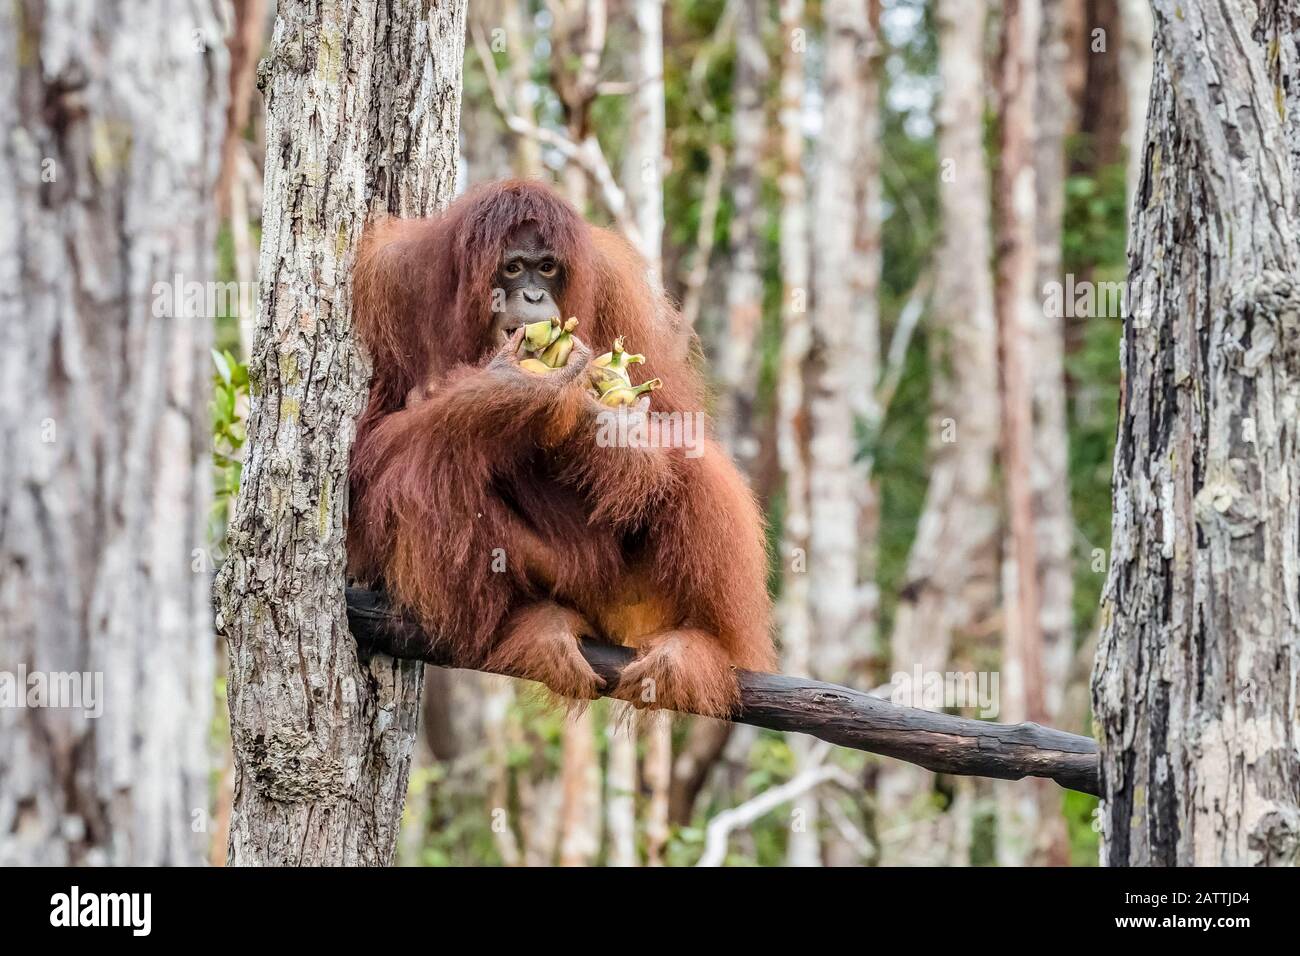 Bornean orangutans, Pongo pygmaeus, on feeding platform, Buluh Kecil River, Borneo, Indonesia Stock Photo